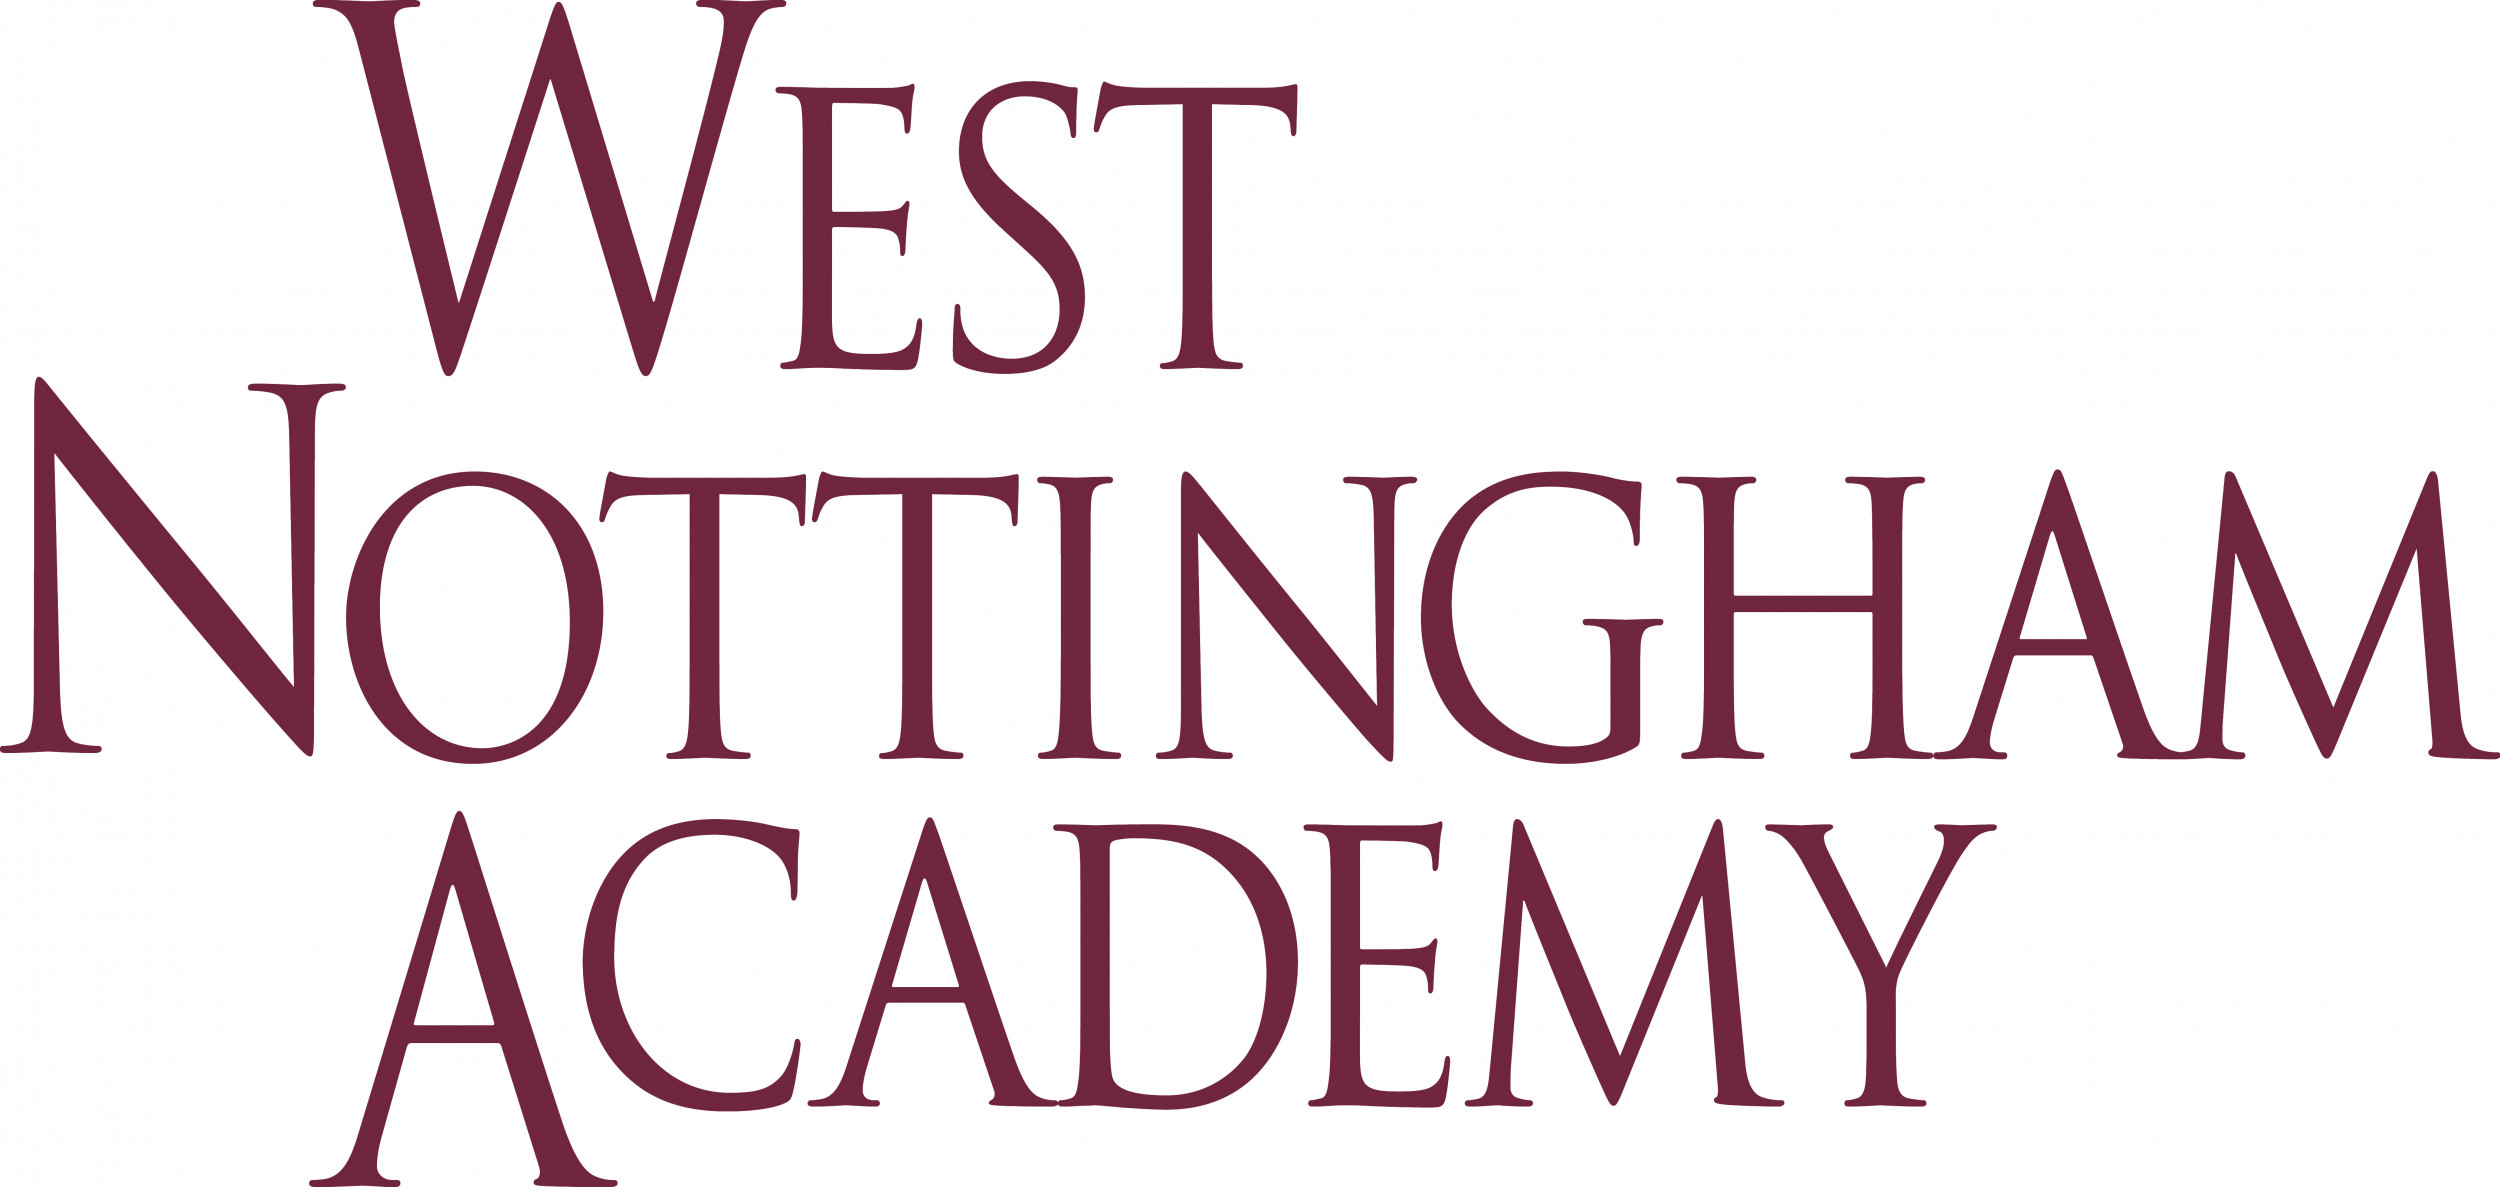 west nottingham academy ranking